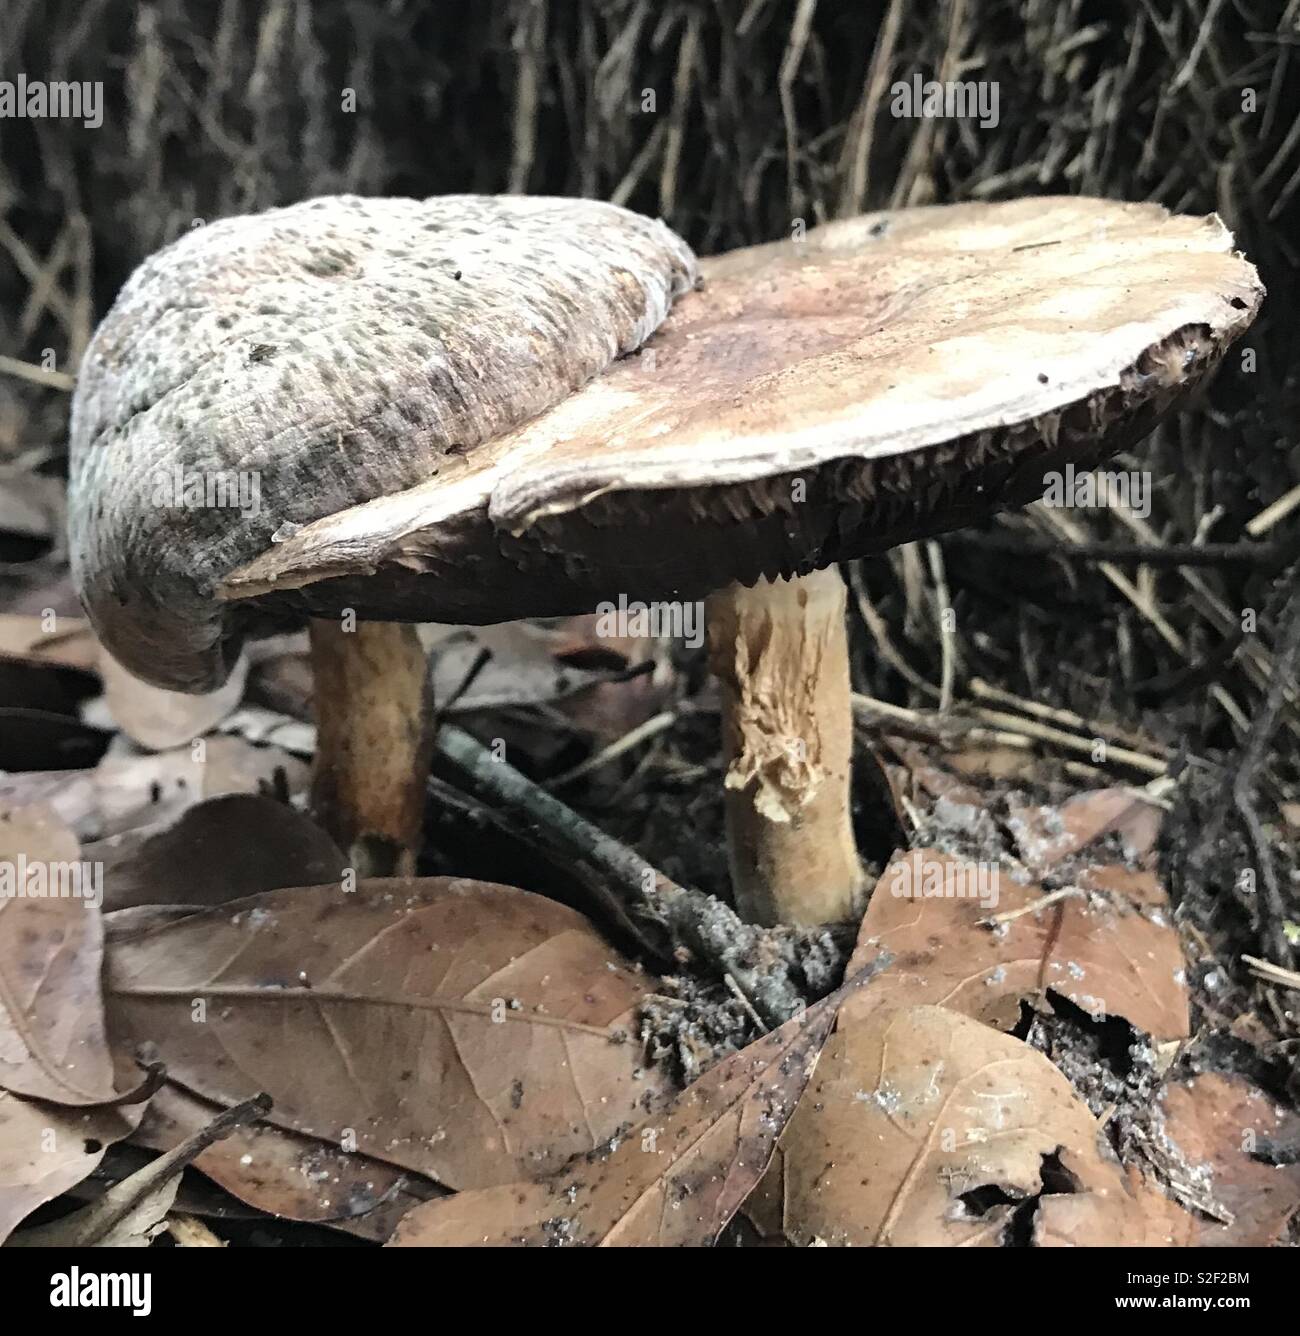 Gli amici del fungo cresce nei boschi della Georgia del Sud. Foto Stock